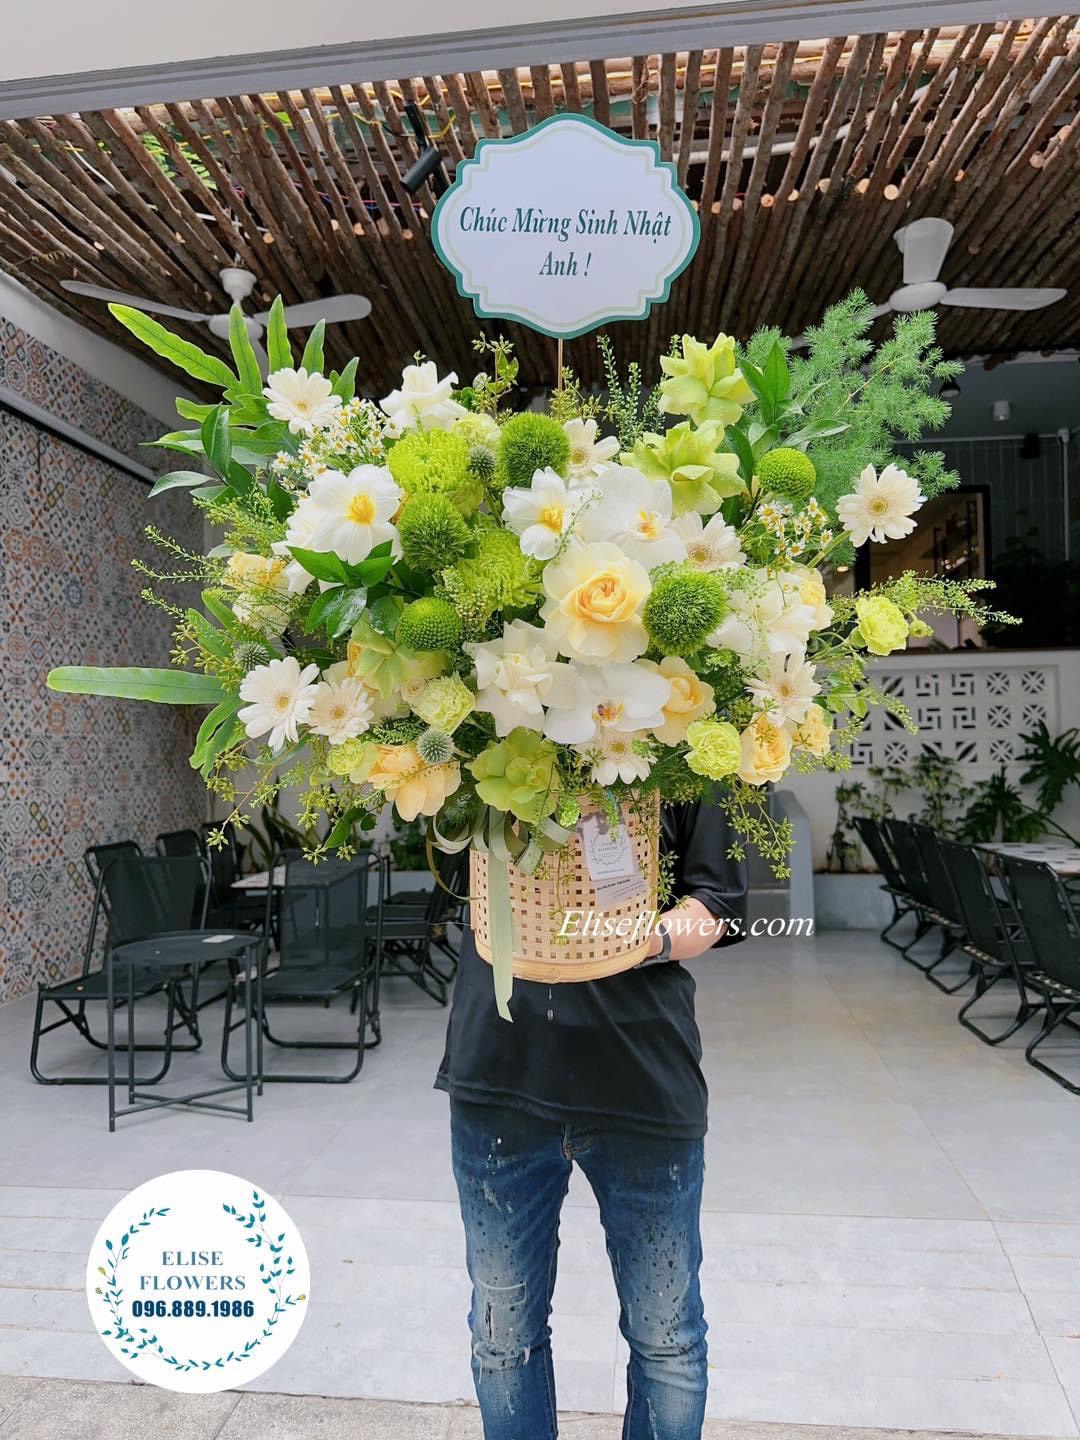 Tiệm hoa uy tín ở Hà Nội Cầu Giấy. Shop hoa tươi đẹp ở quận Cầu Giấy, Hà Nội